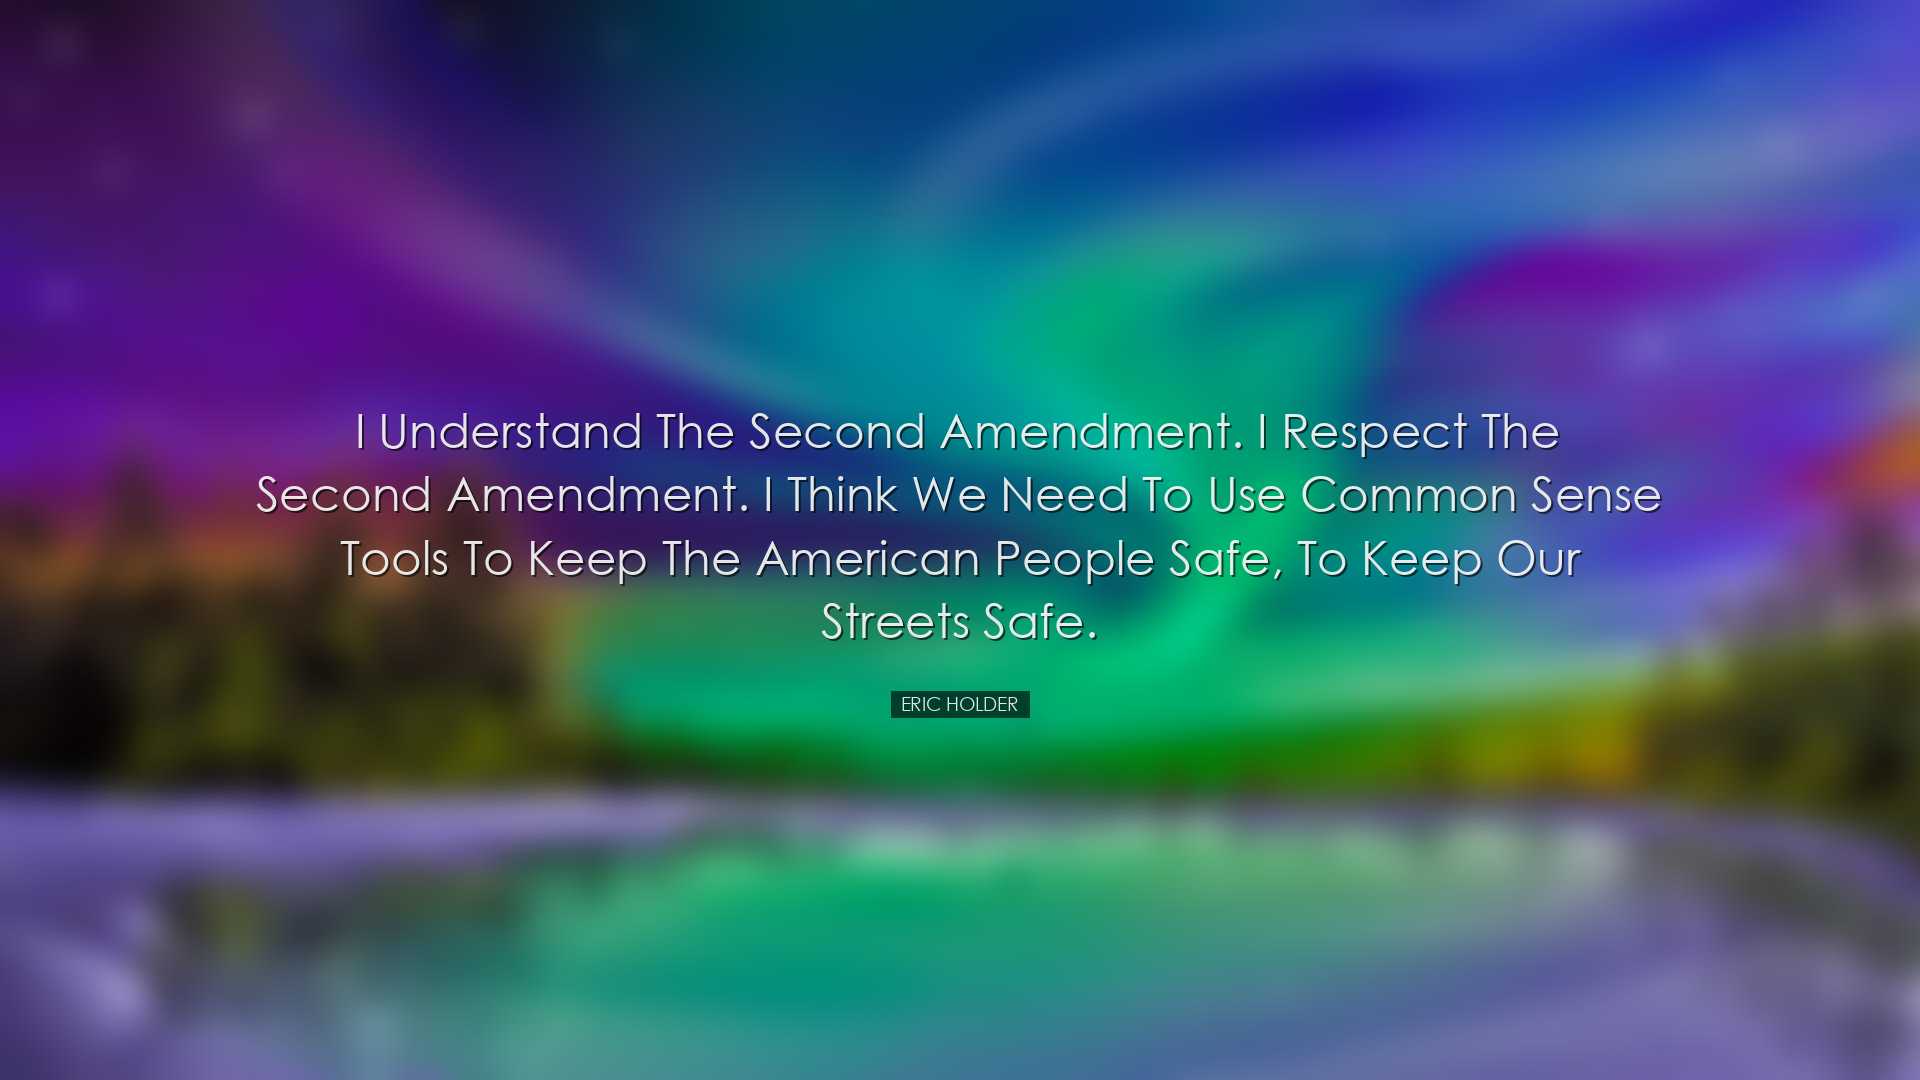 I understand the Second Amendment. I respect the Second Amendment.